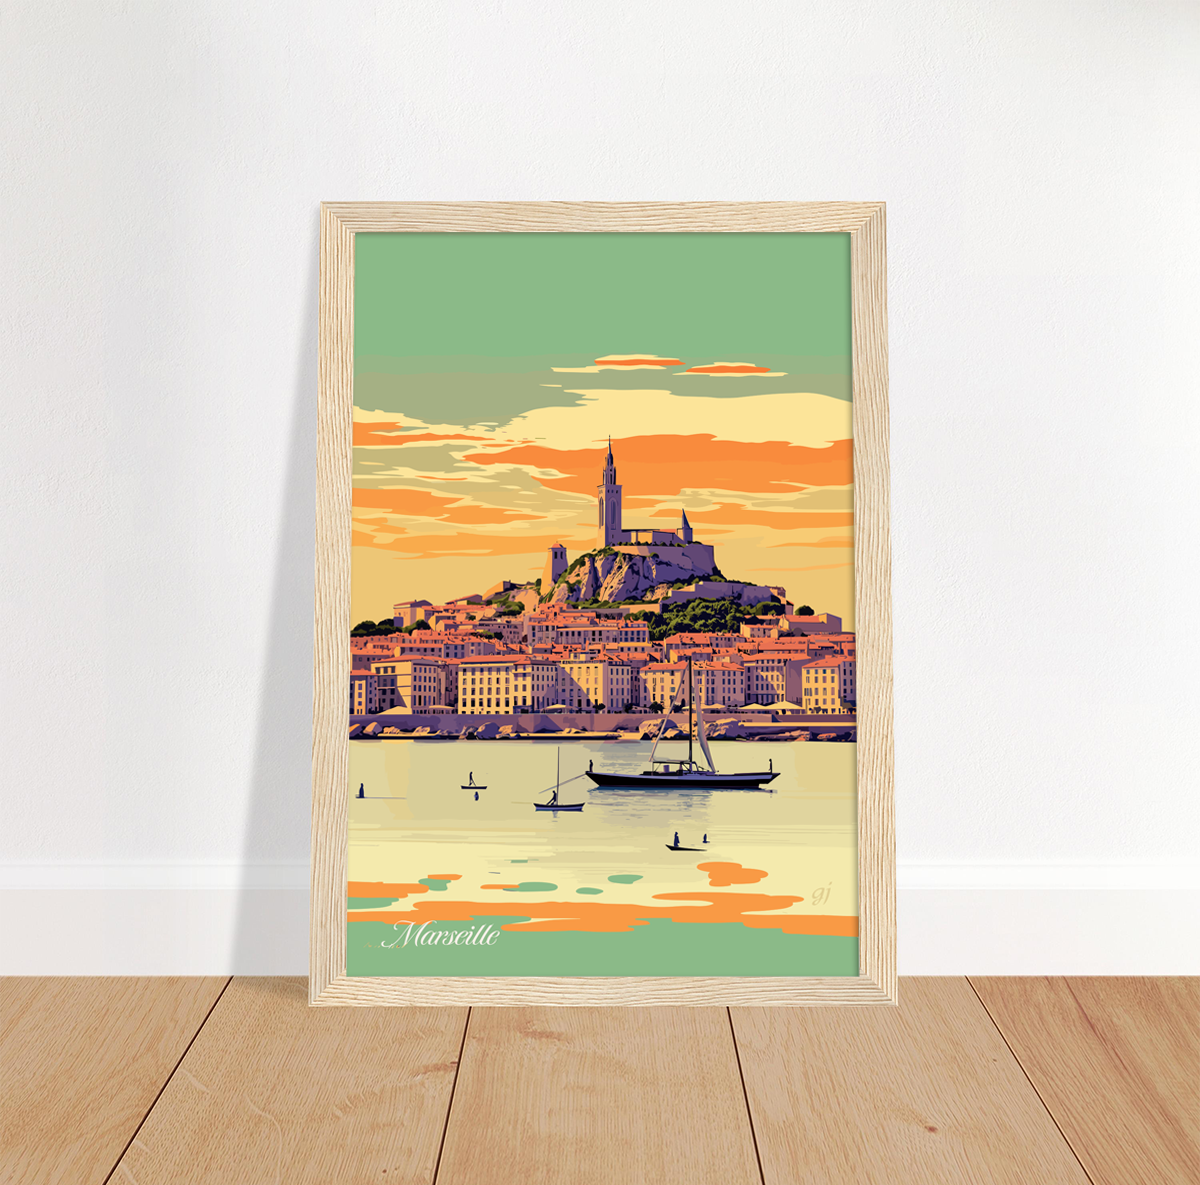 Marseille poster by bon voyage design